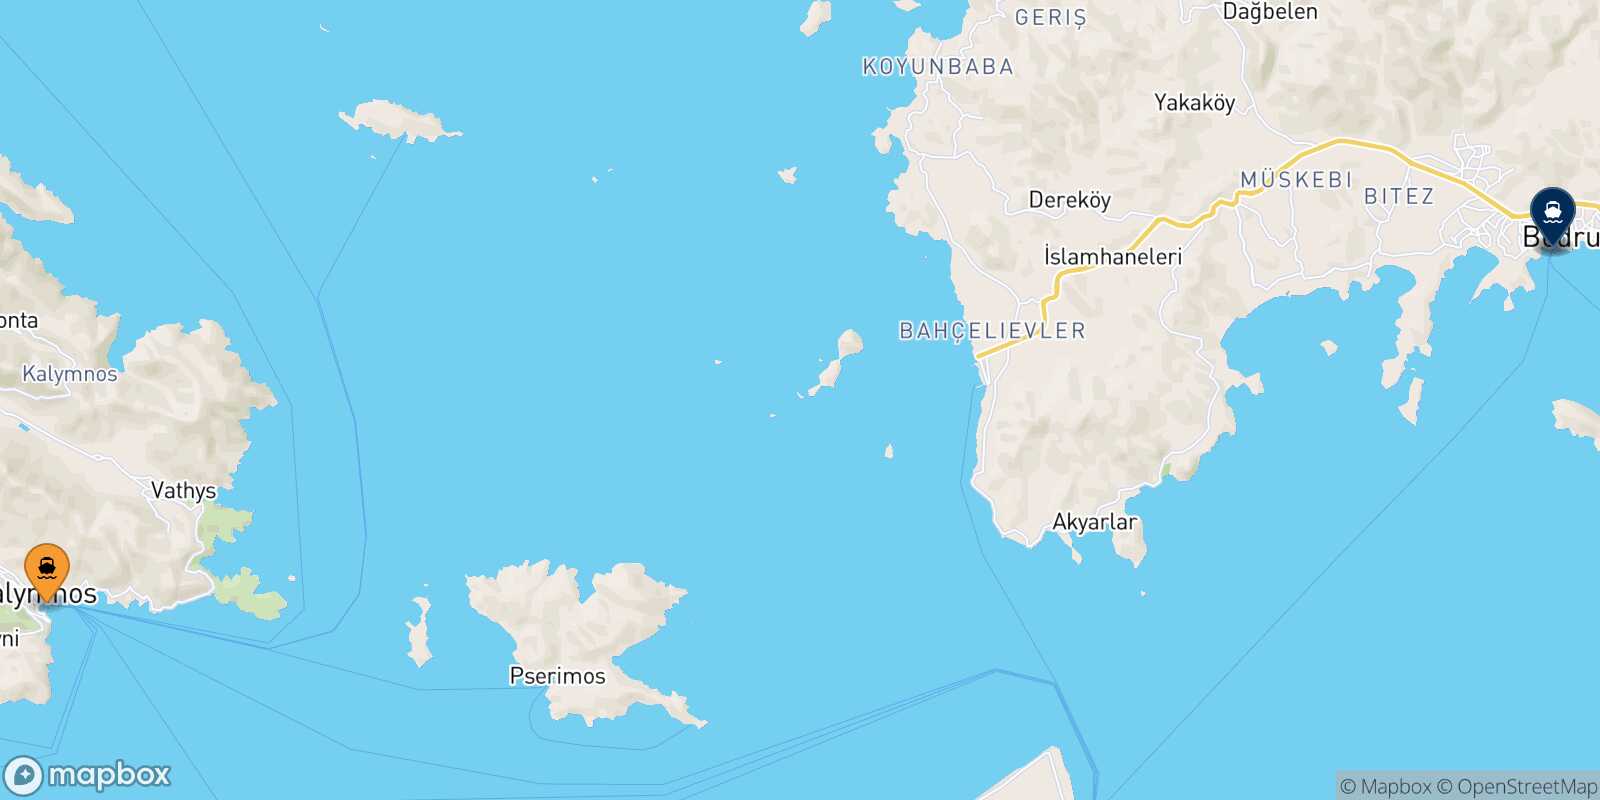 Mappa delle destinazioni raggiungibili da Kalymnos